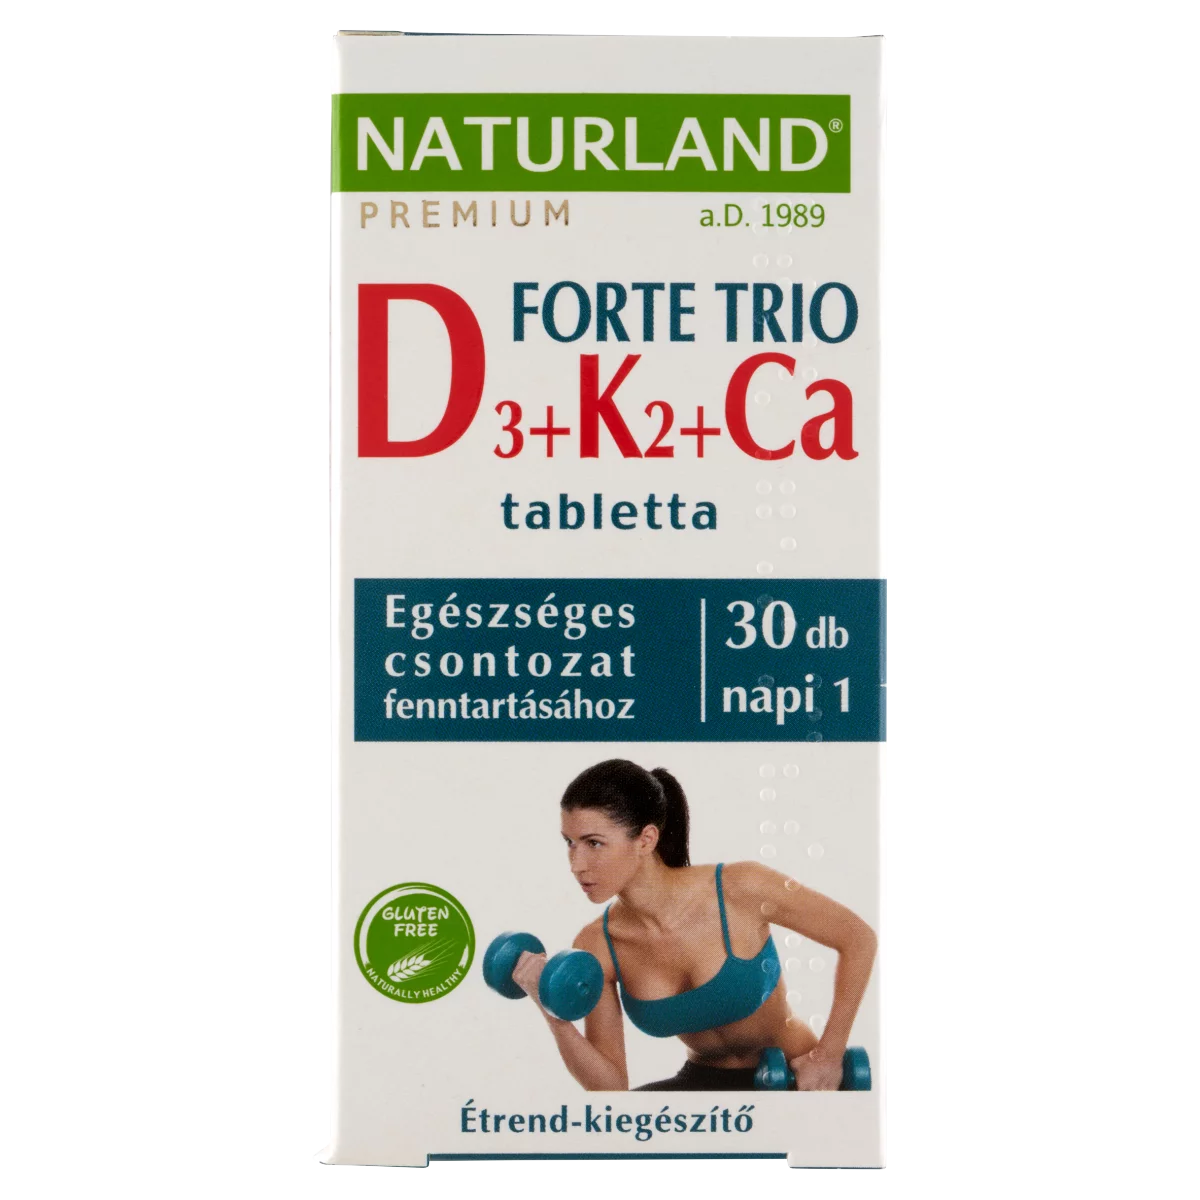 Naturland Premium D3 + K2 + Ca Forte Trio étrend-kiegészítő tabletta 30 db 39,4 g